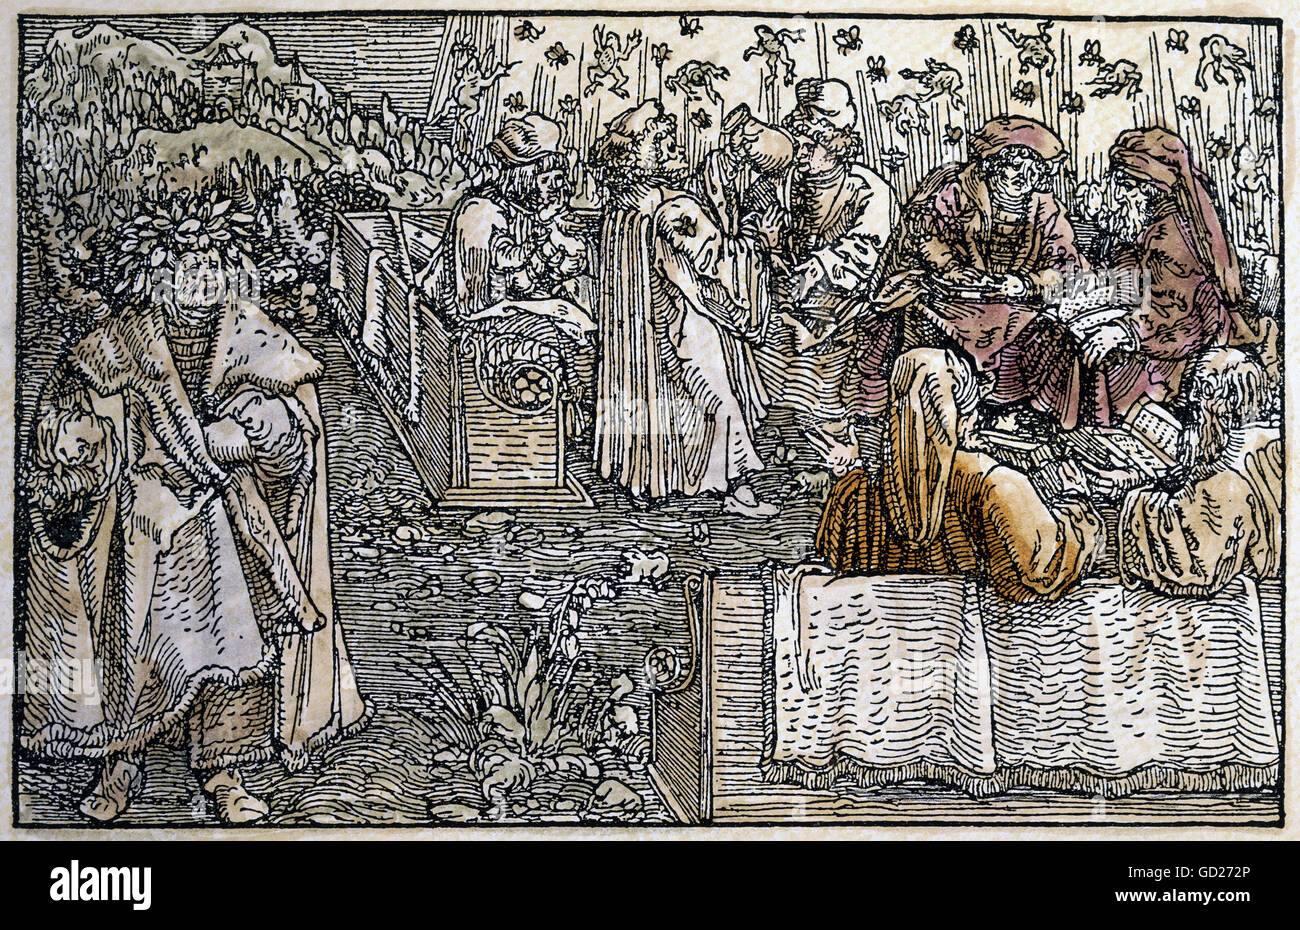 Mittelalter, Allegorien, Einbildung und Eitelkeit, Meister der sieben  freien Künste, werden von Fröschen und Gadgets beunruhigend, die Arroganz,  auf der linken Seite: Petrarca mit Lorbeerkranz, Selbstlob, Farbholzschnitt  von Petrarca Master (1532 -